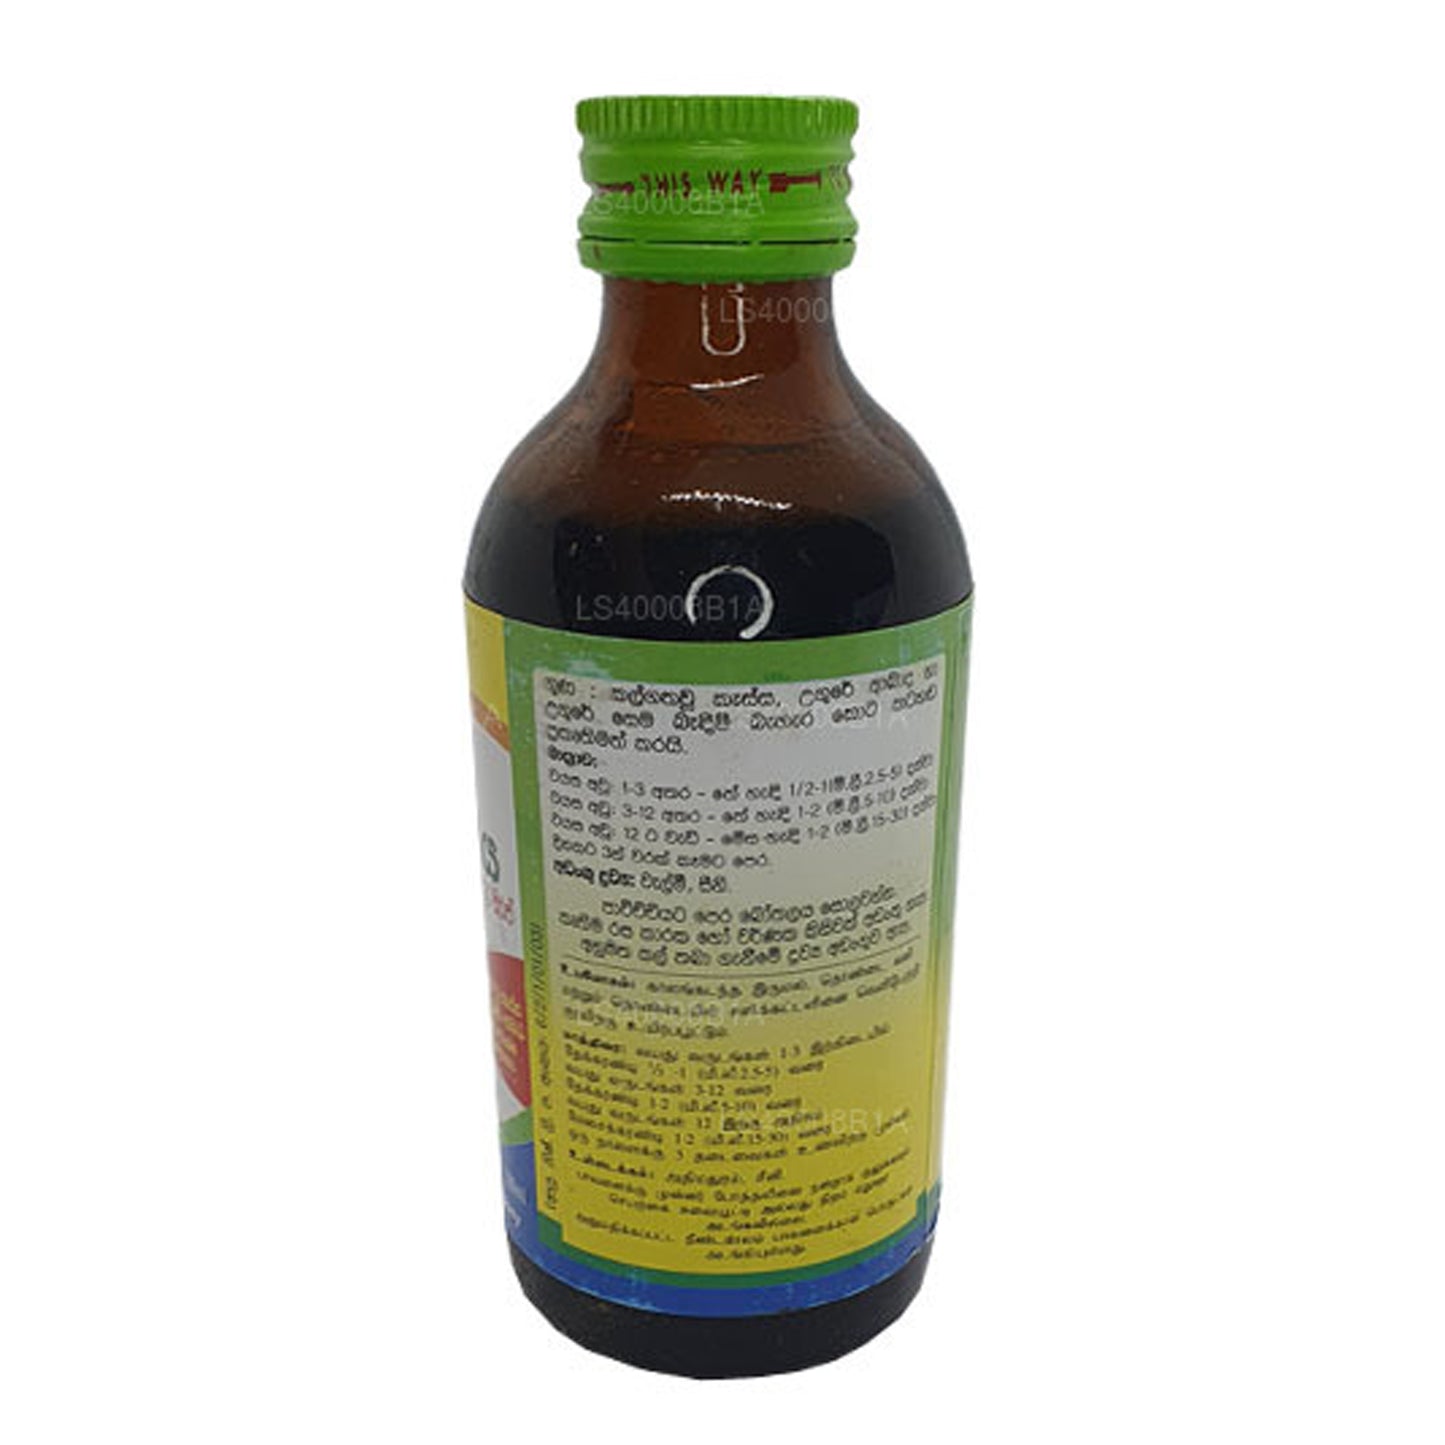 Beam Velmee Siroop (Athimadura-siroop) (180 ml)